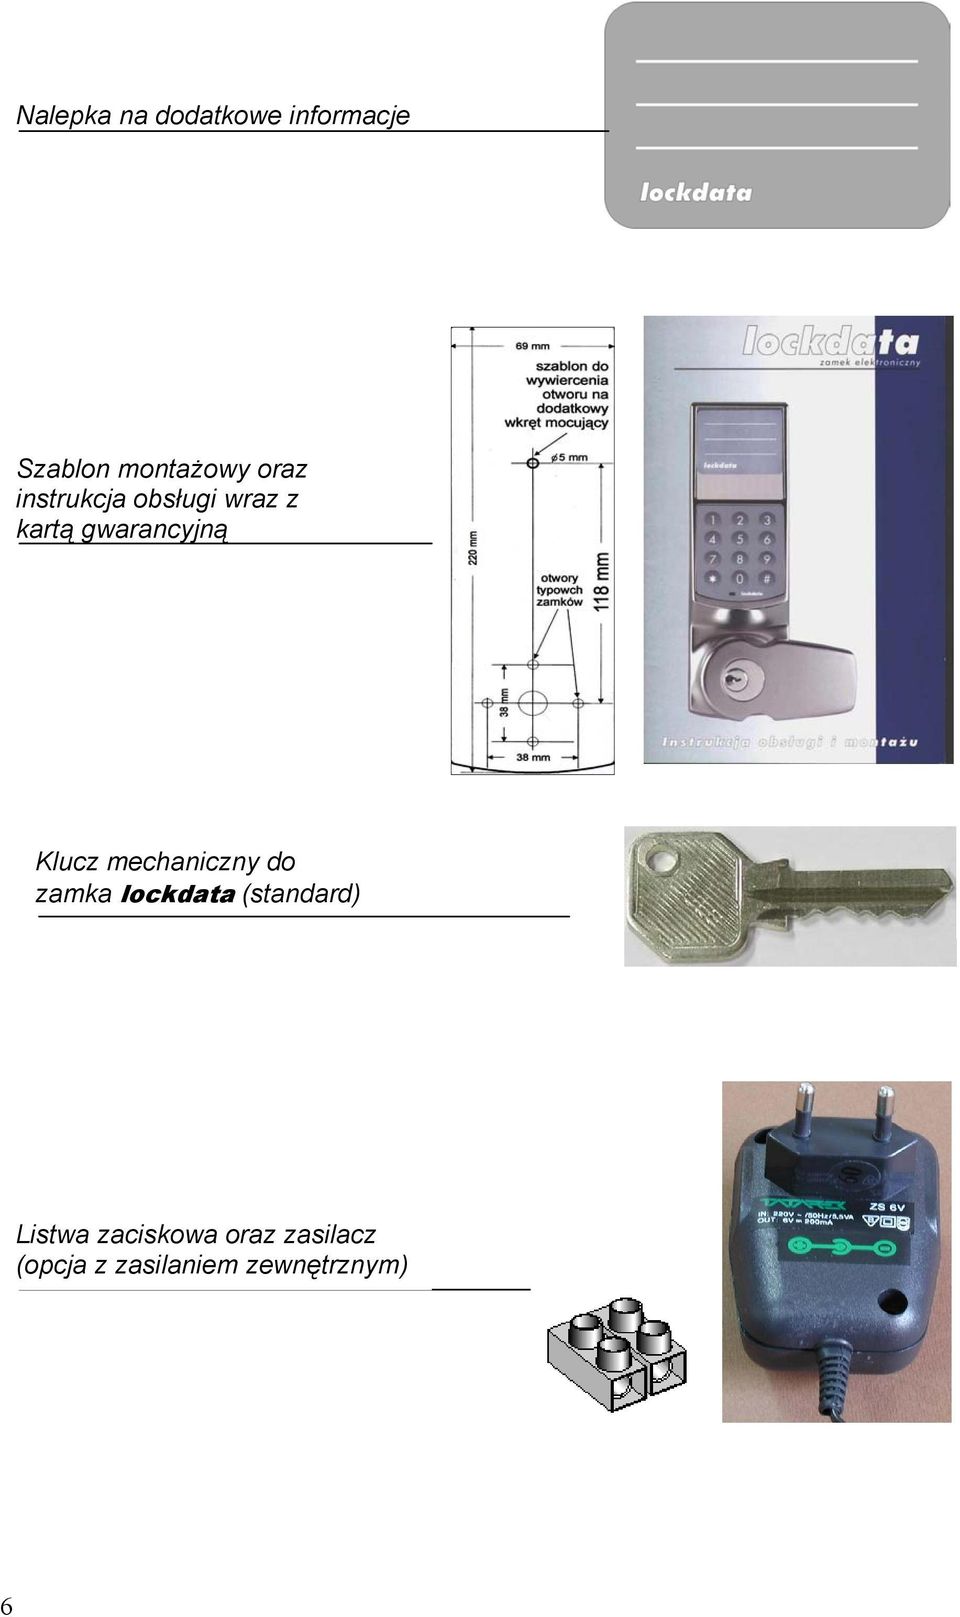 Klucz mechaniczny do zamka lockdata (standard)